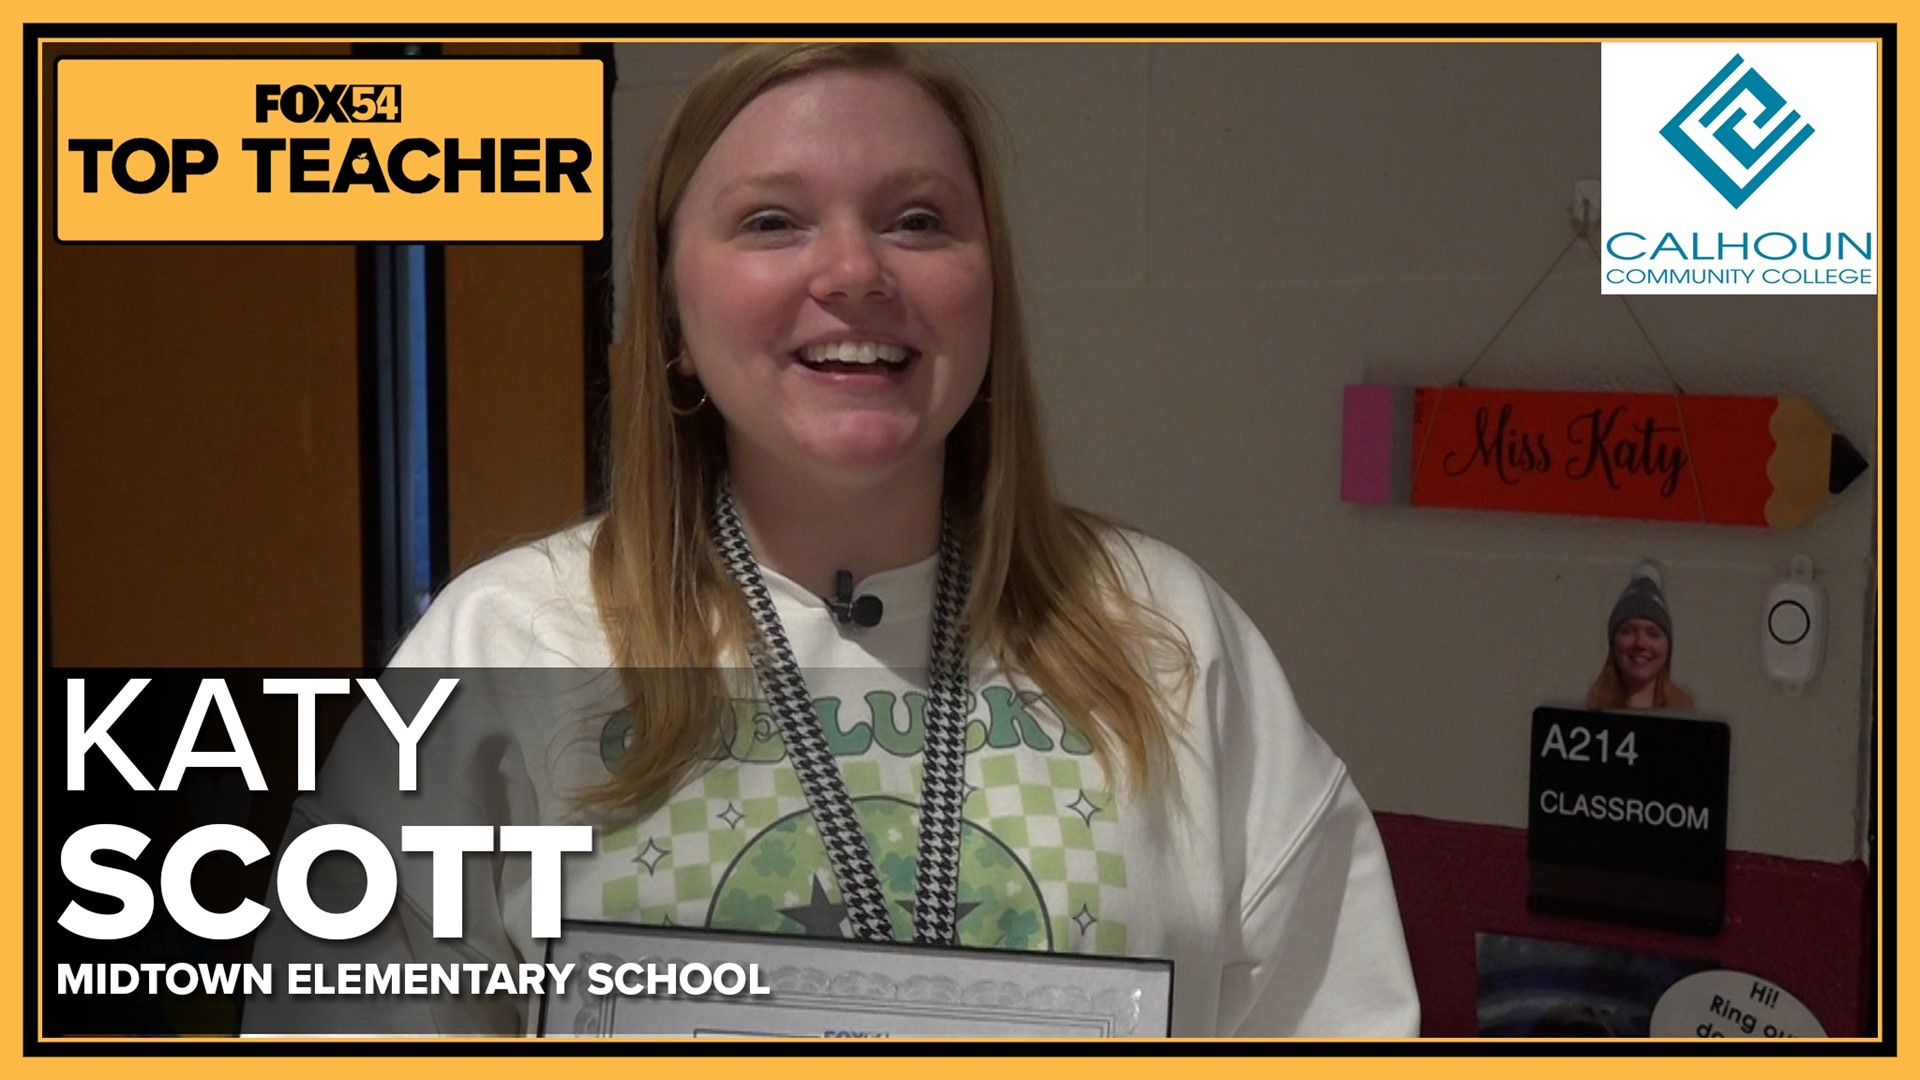 FOX54 Top Teacher Katy Scott is surprised!